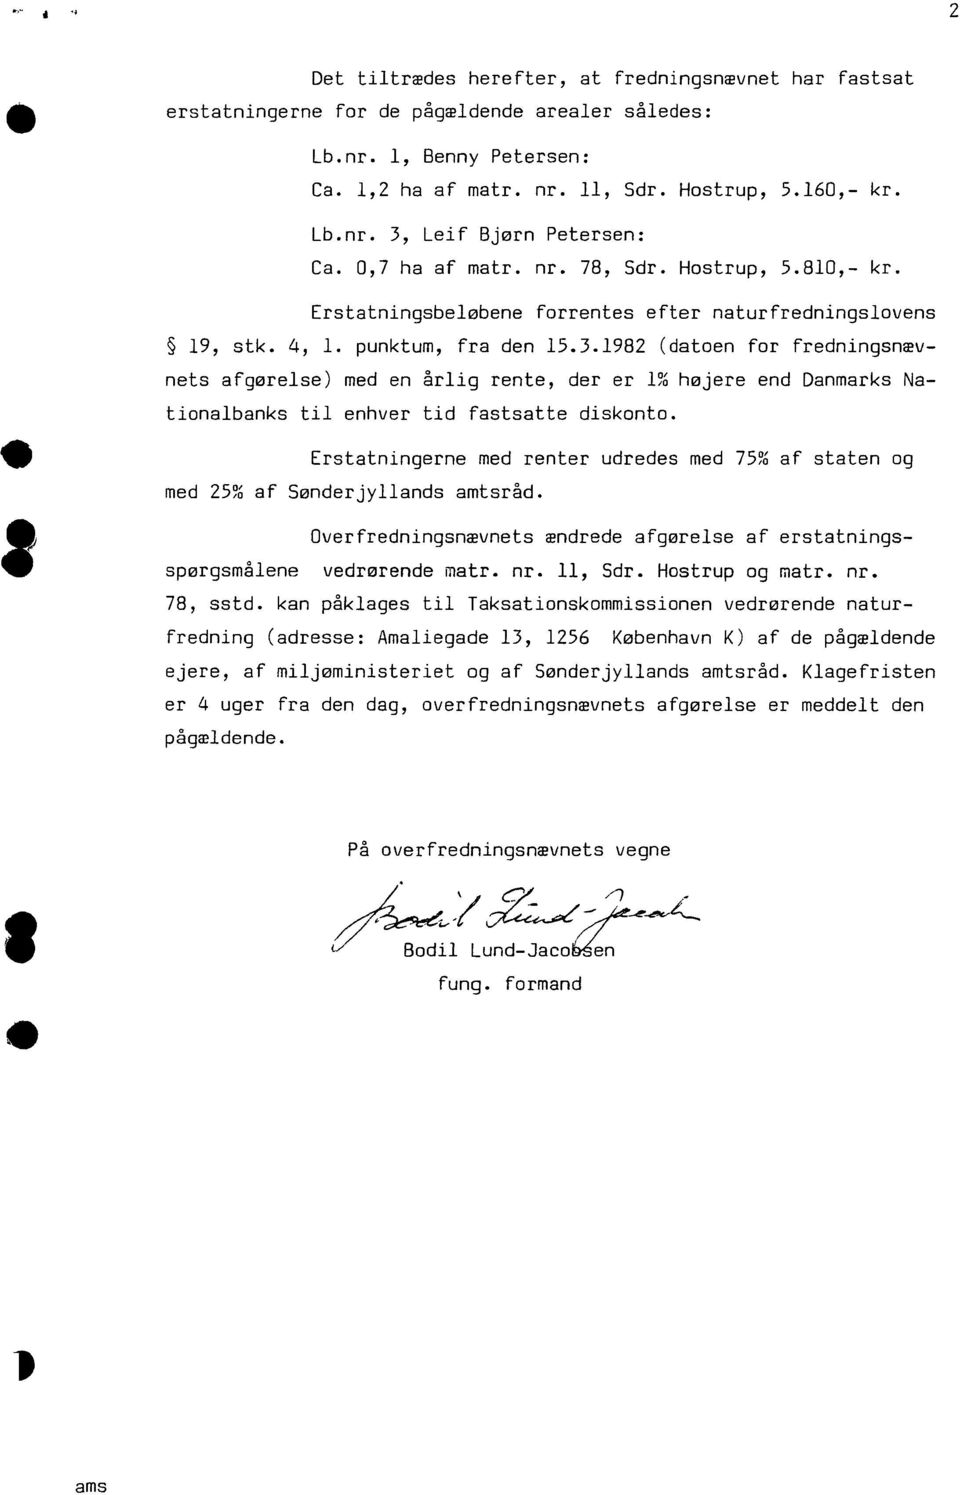 1982 (datoen for fredningsnævnets afgørelse) med en årlig rente, der er 1% højere end Danmarks Nationalbanks til enhver tid fastsatte diskonto.